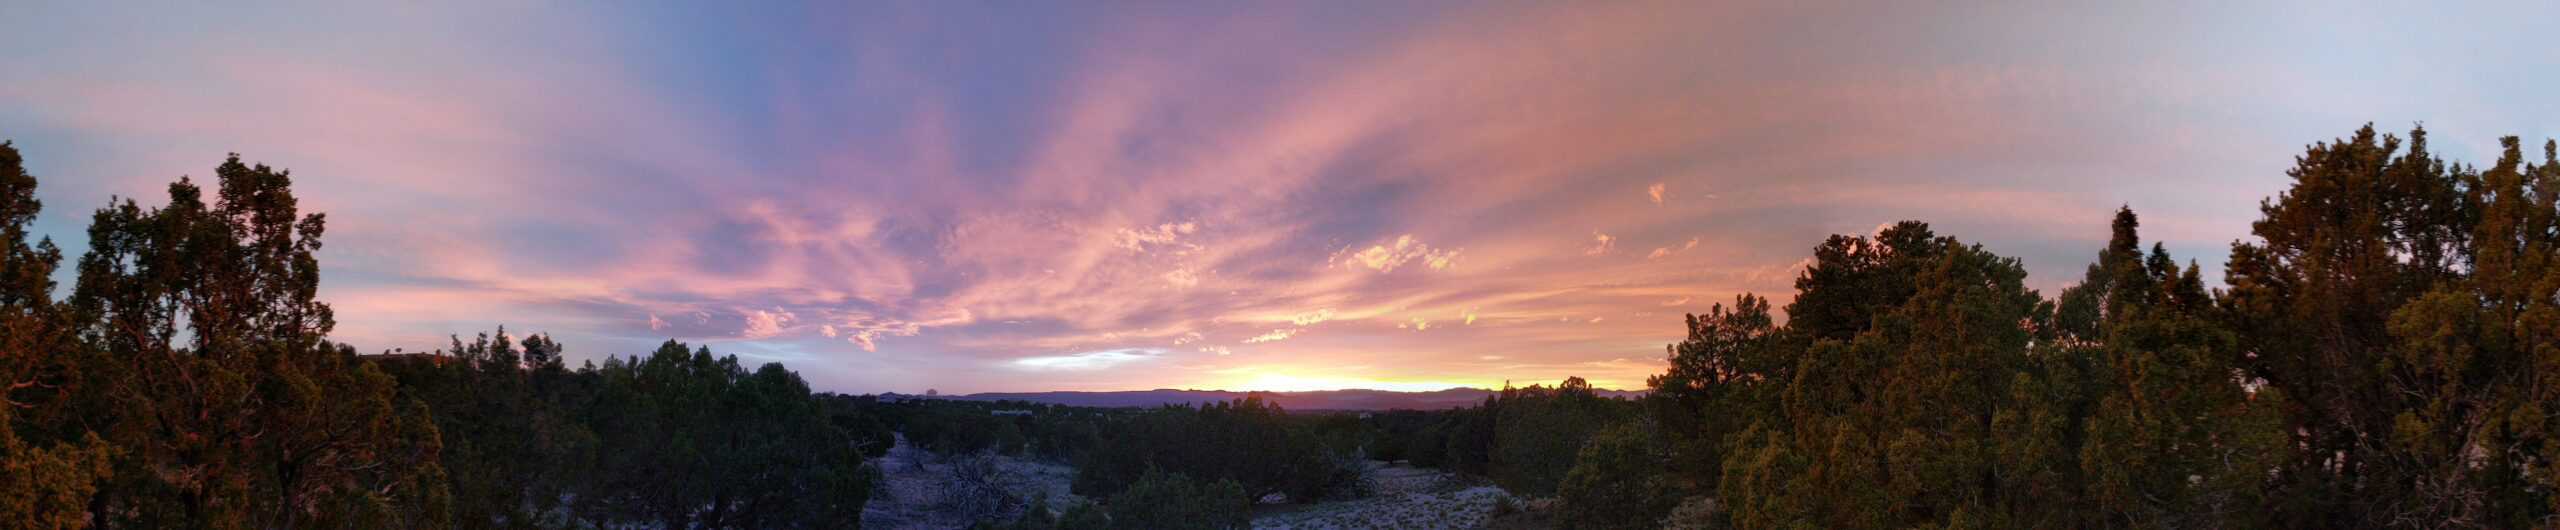 Panoramic sunset over desert outside Santa Fe by Grendelkhan